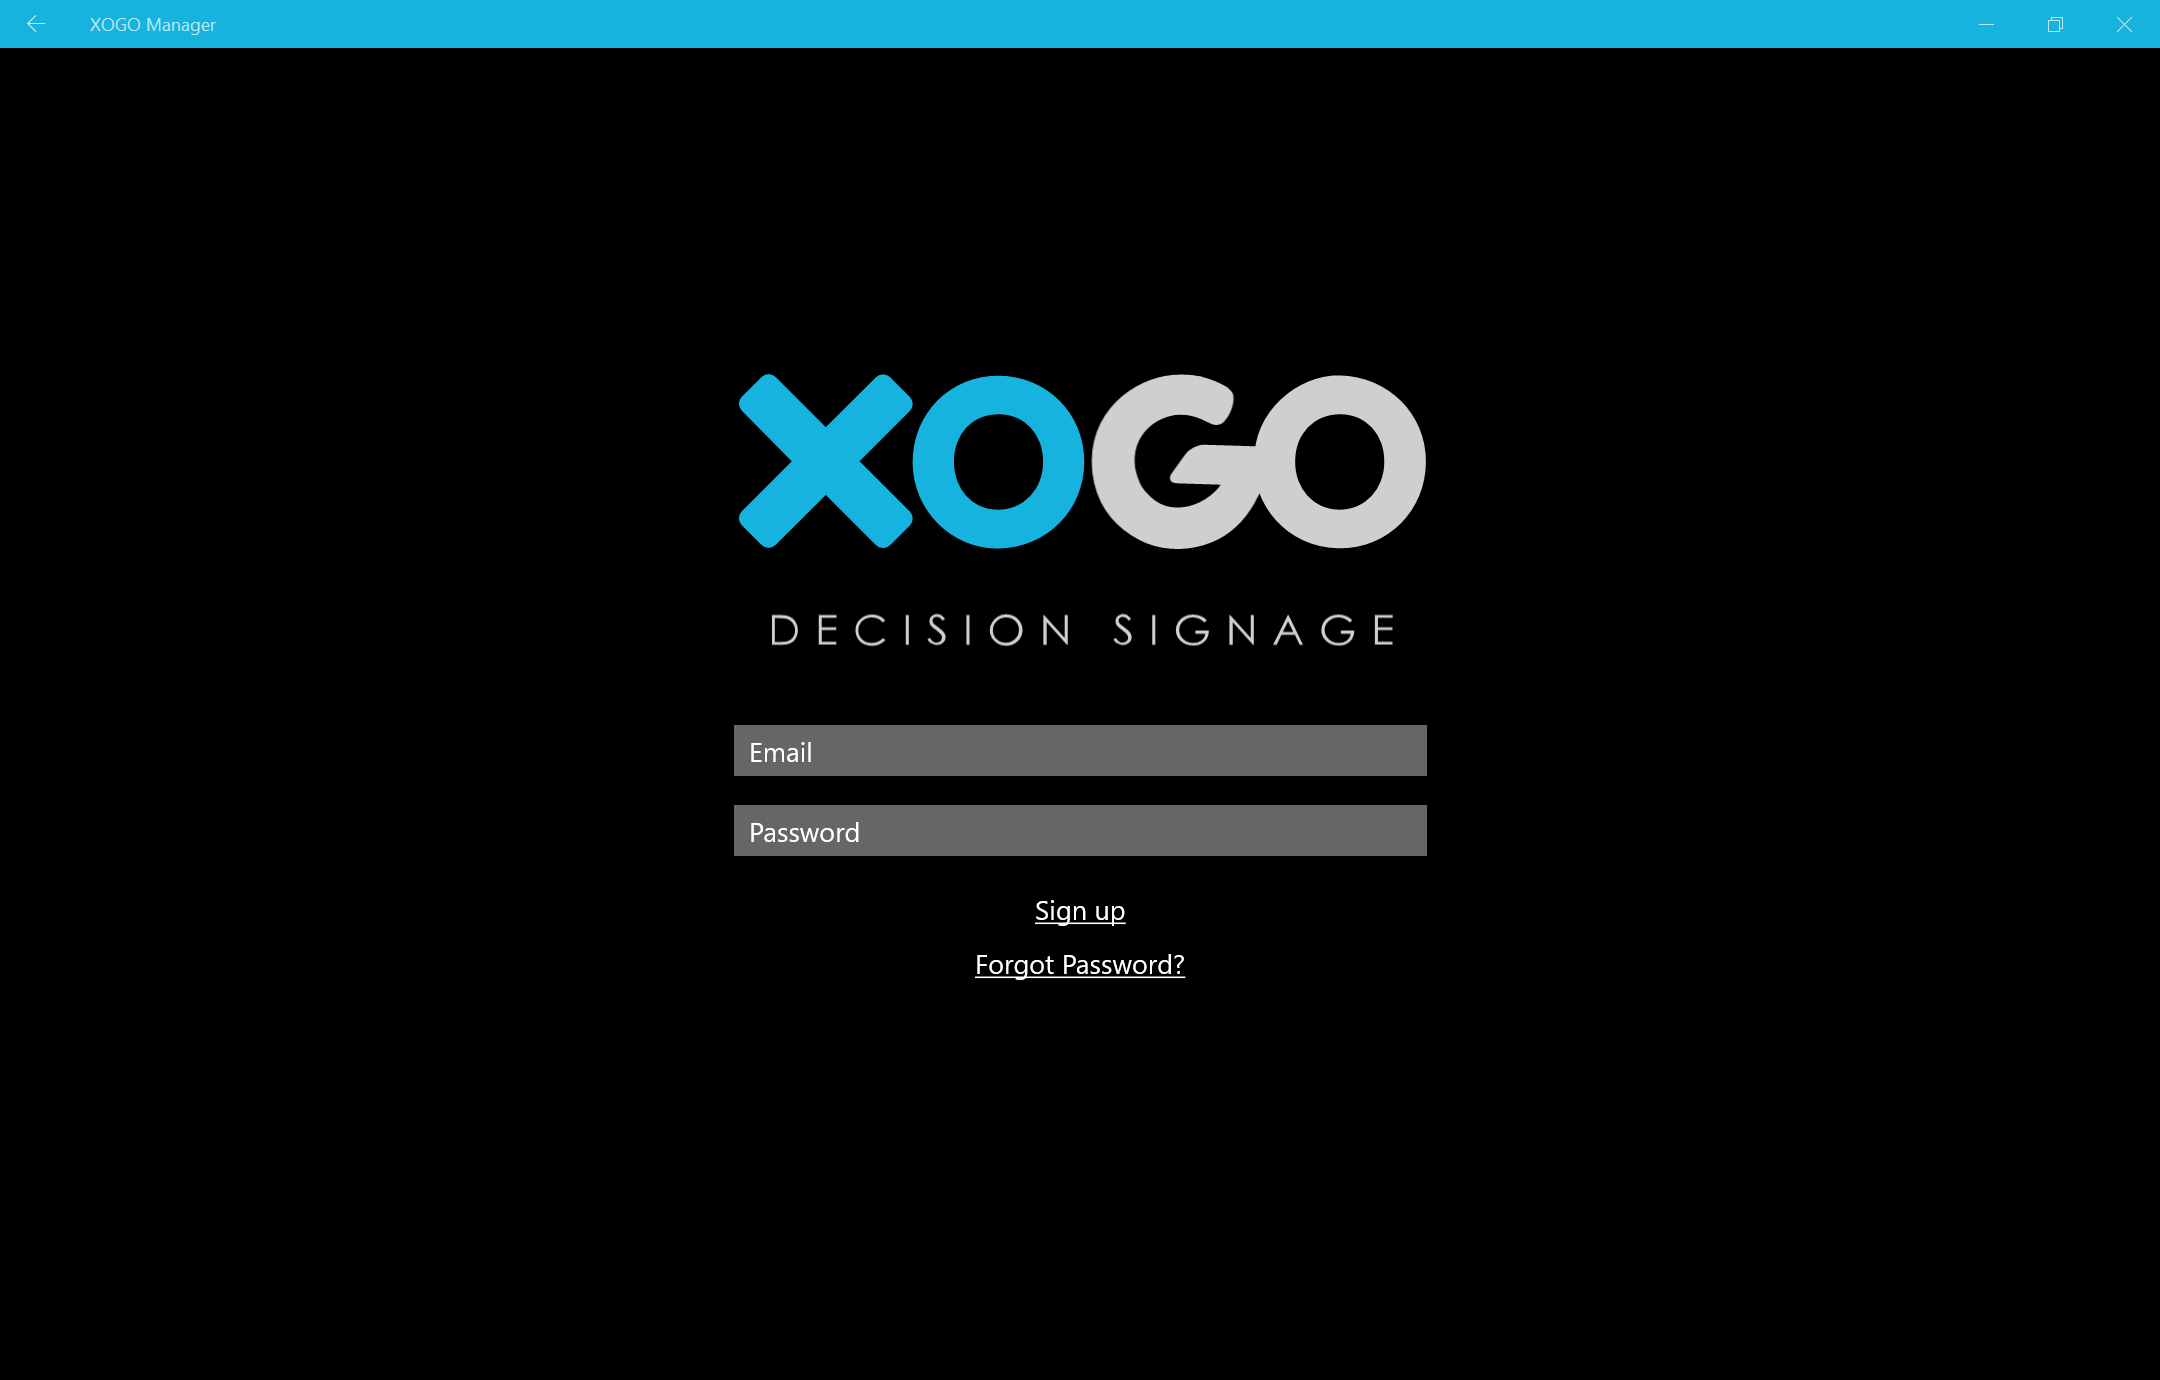 XOGO Mini 2b  XOGO Digital Signage